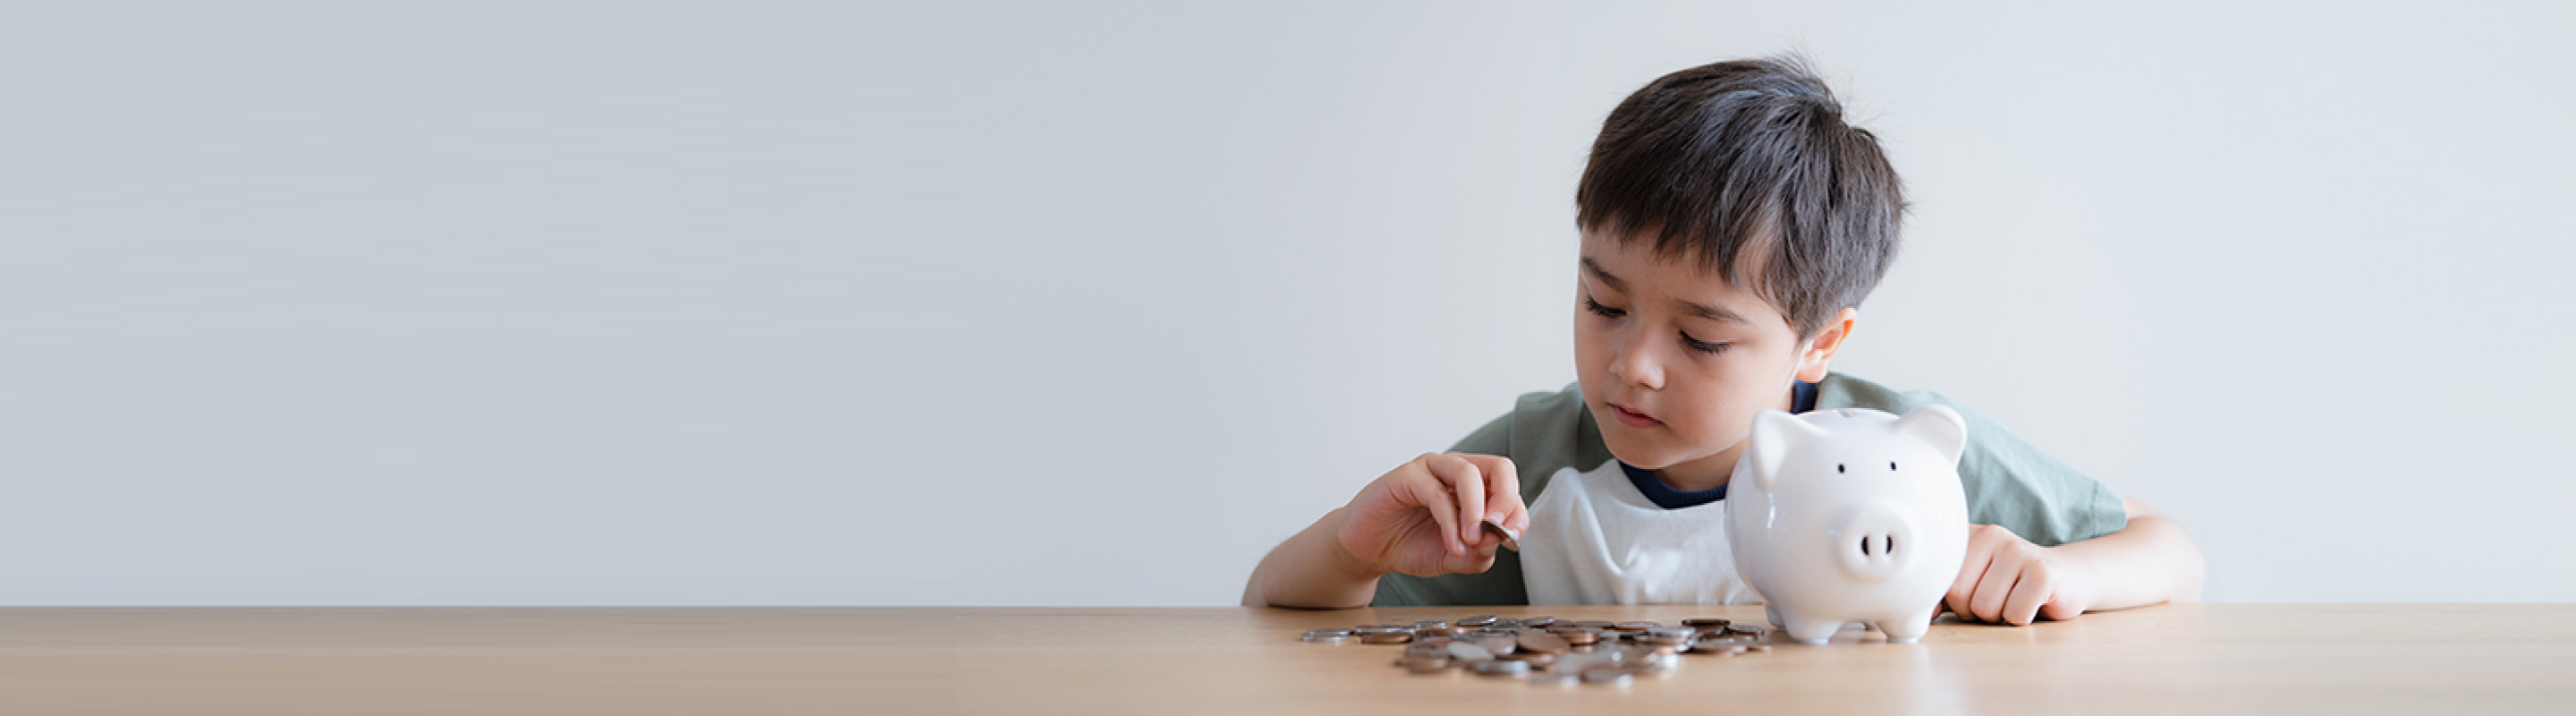 Niño contando monedas de su alcancía.